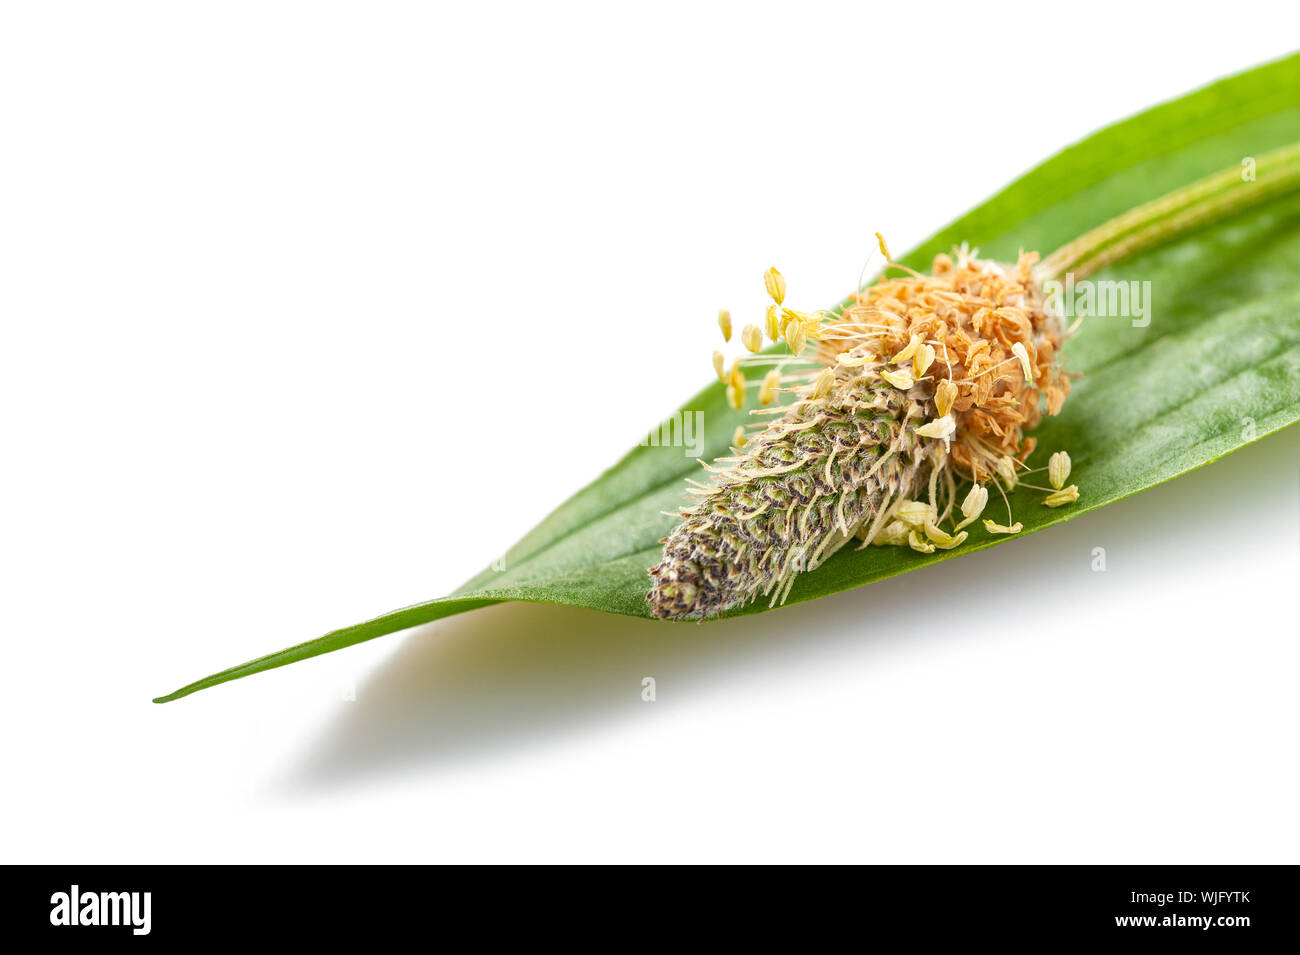 Ribwort plantain isolated on white background Stock Photo